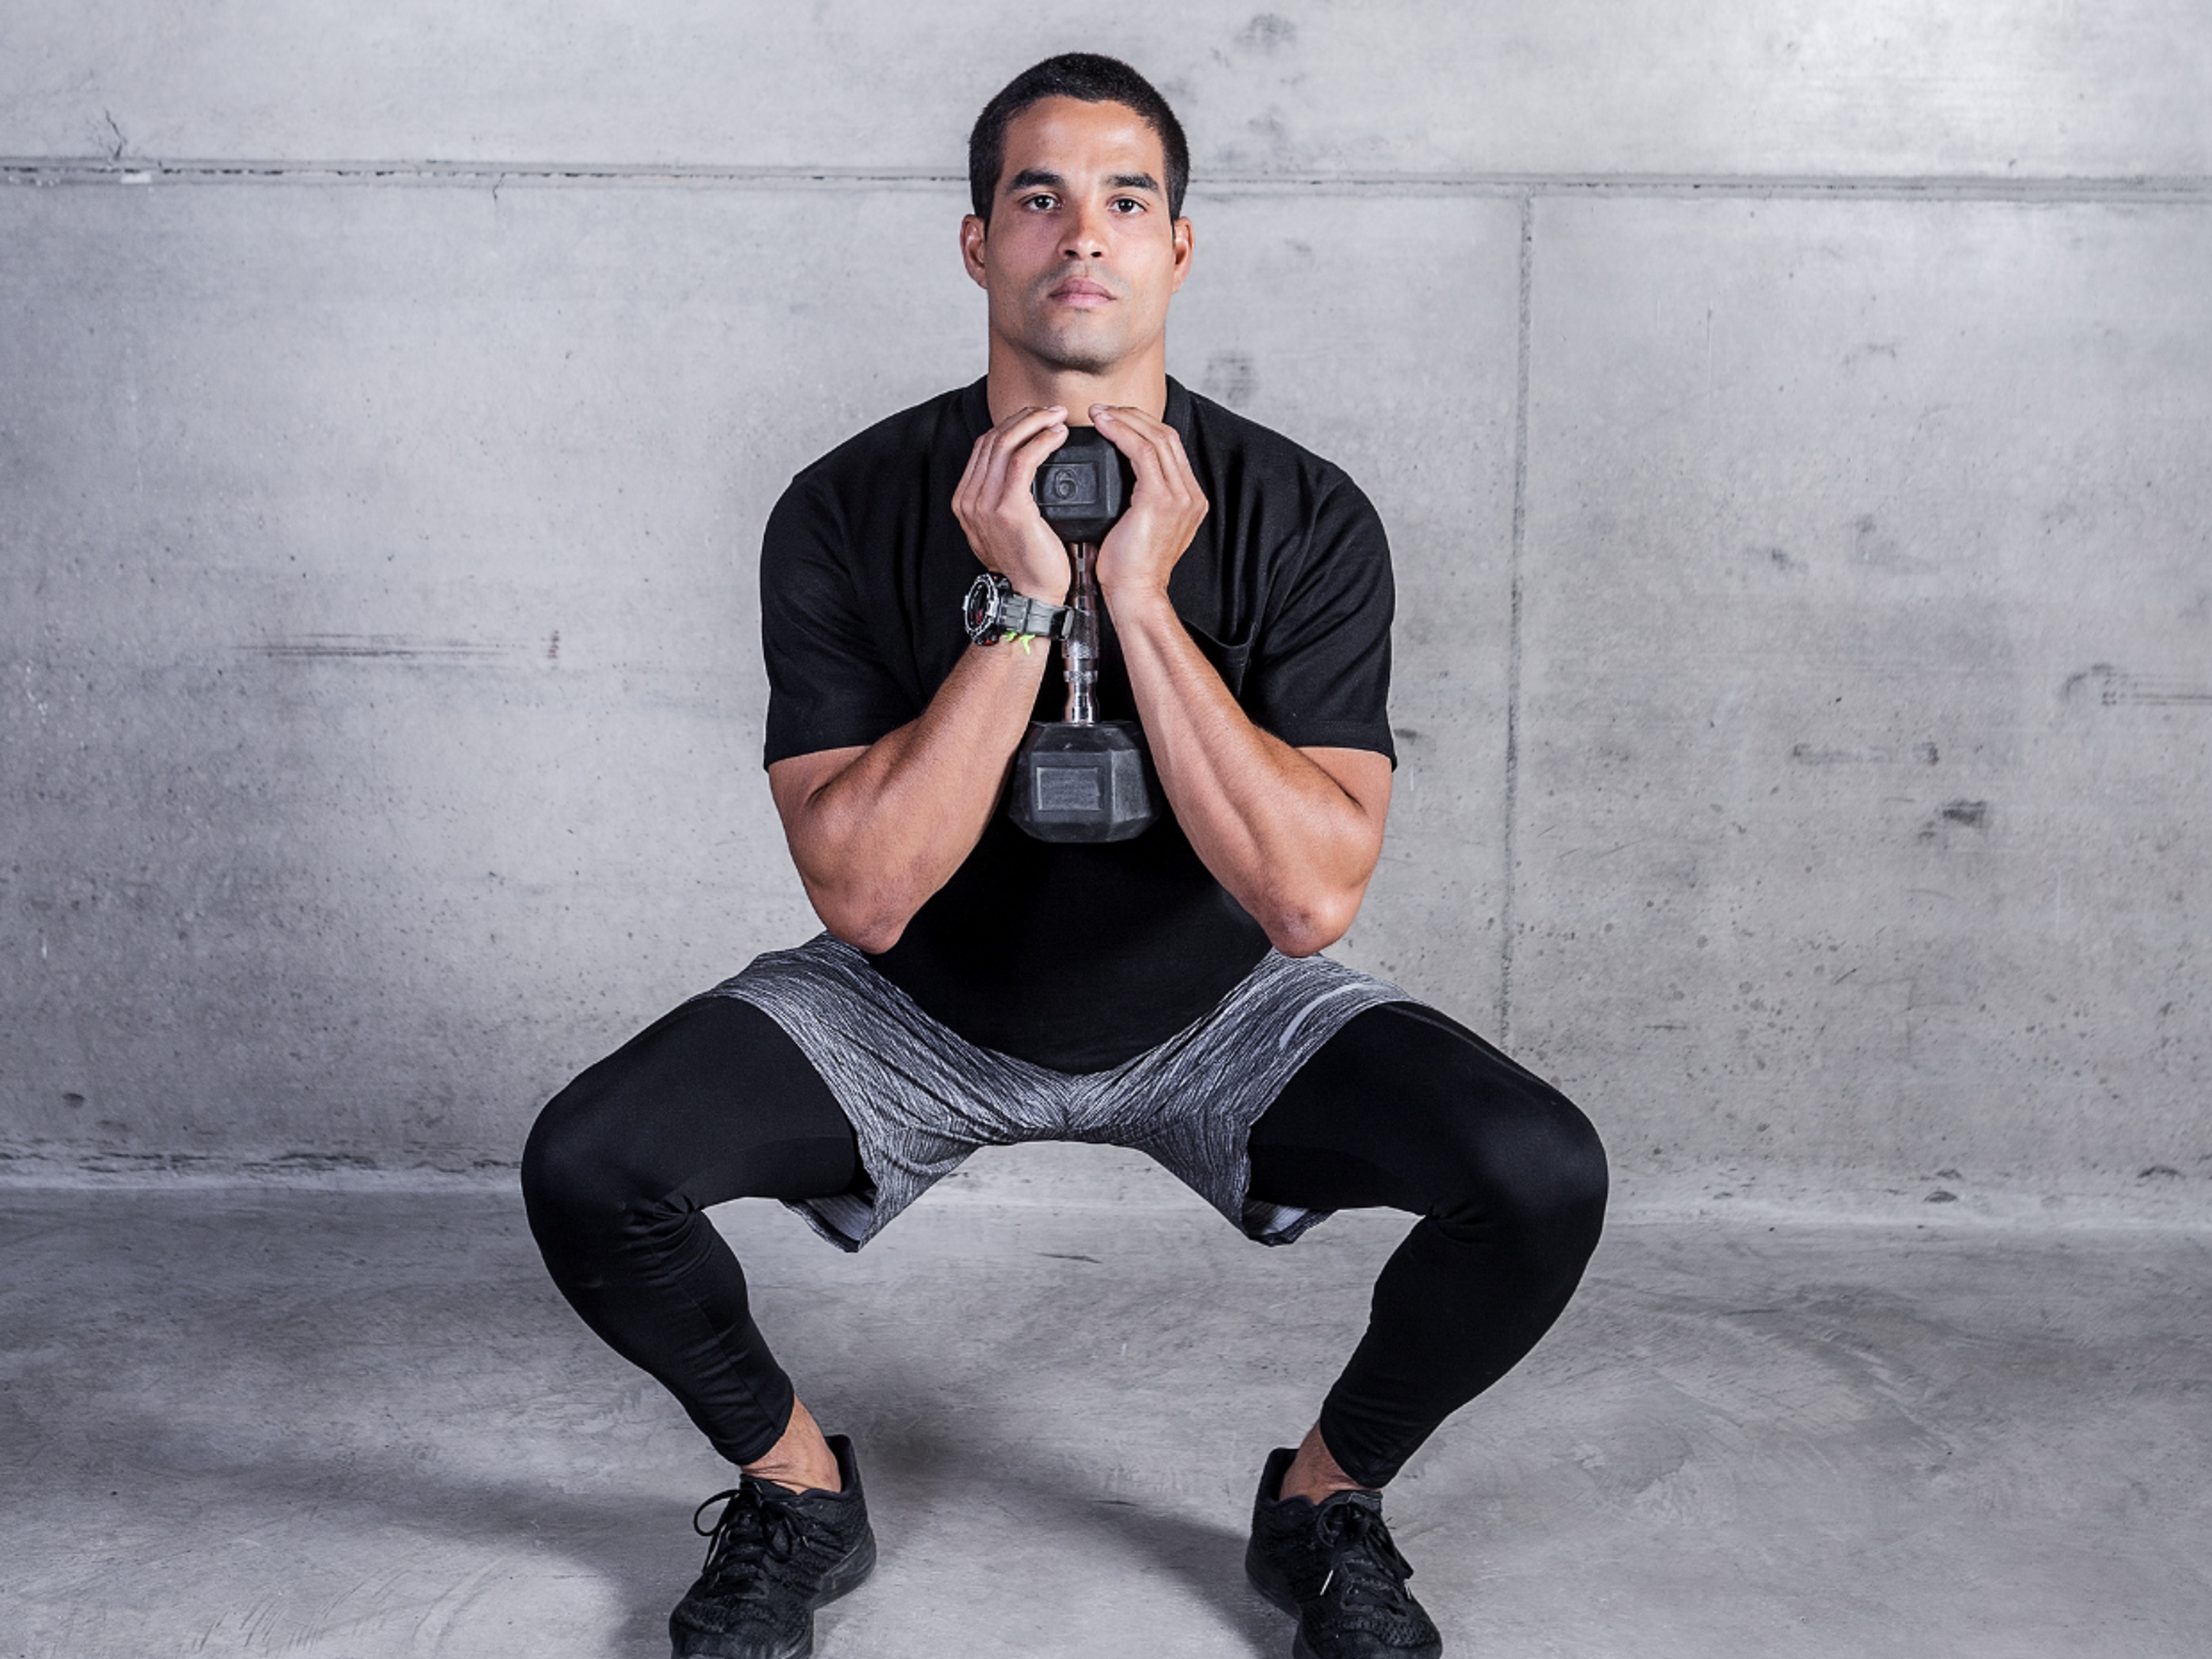 Faire des squats avec des poids augmente la charge sur votre fascia plantaire et aide à développer la force et le contrôle de vos jambes